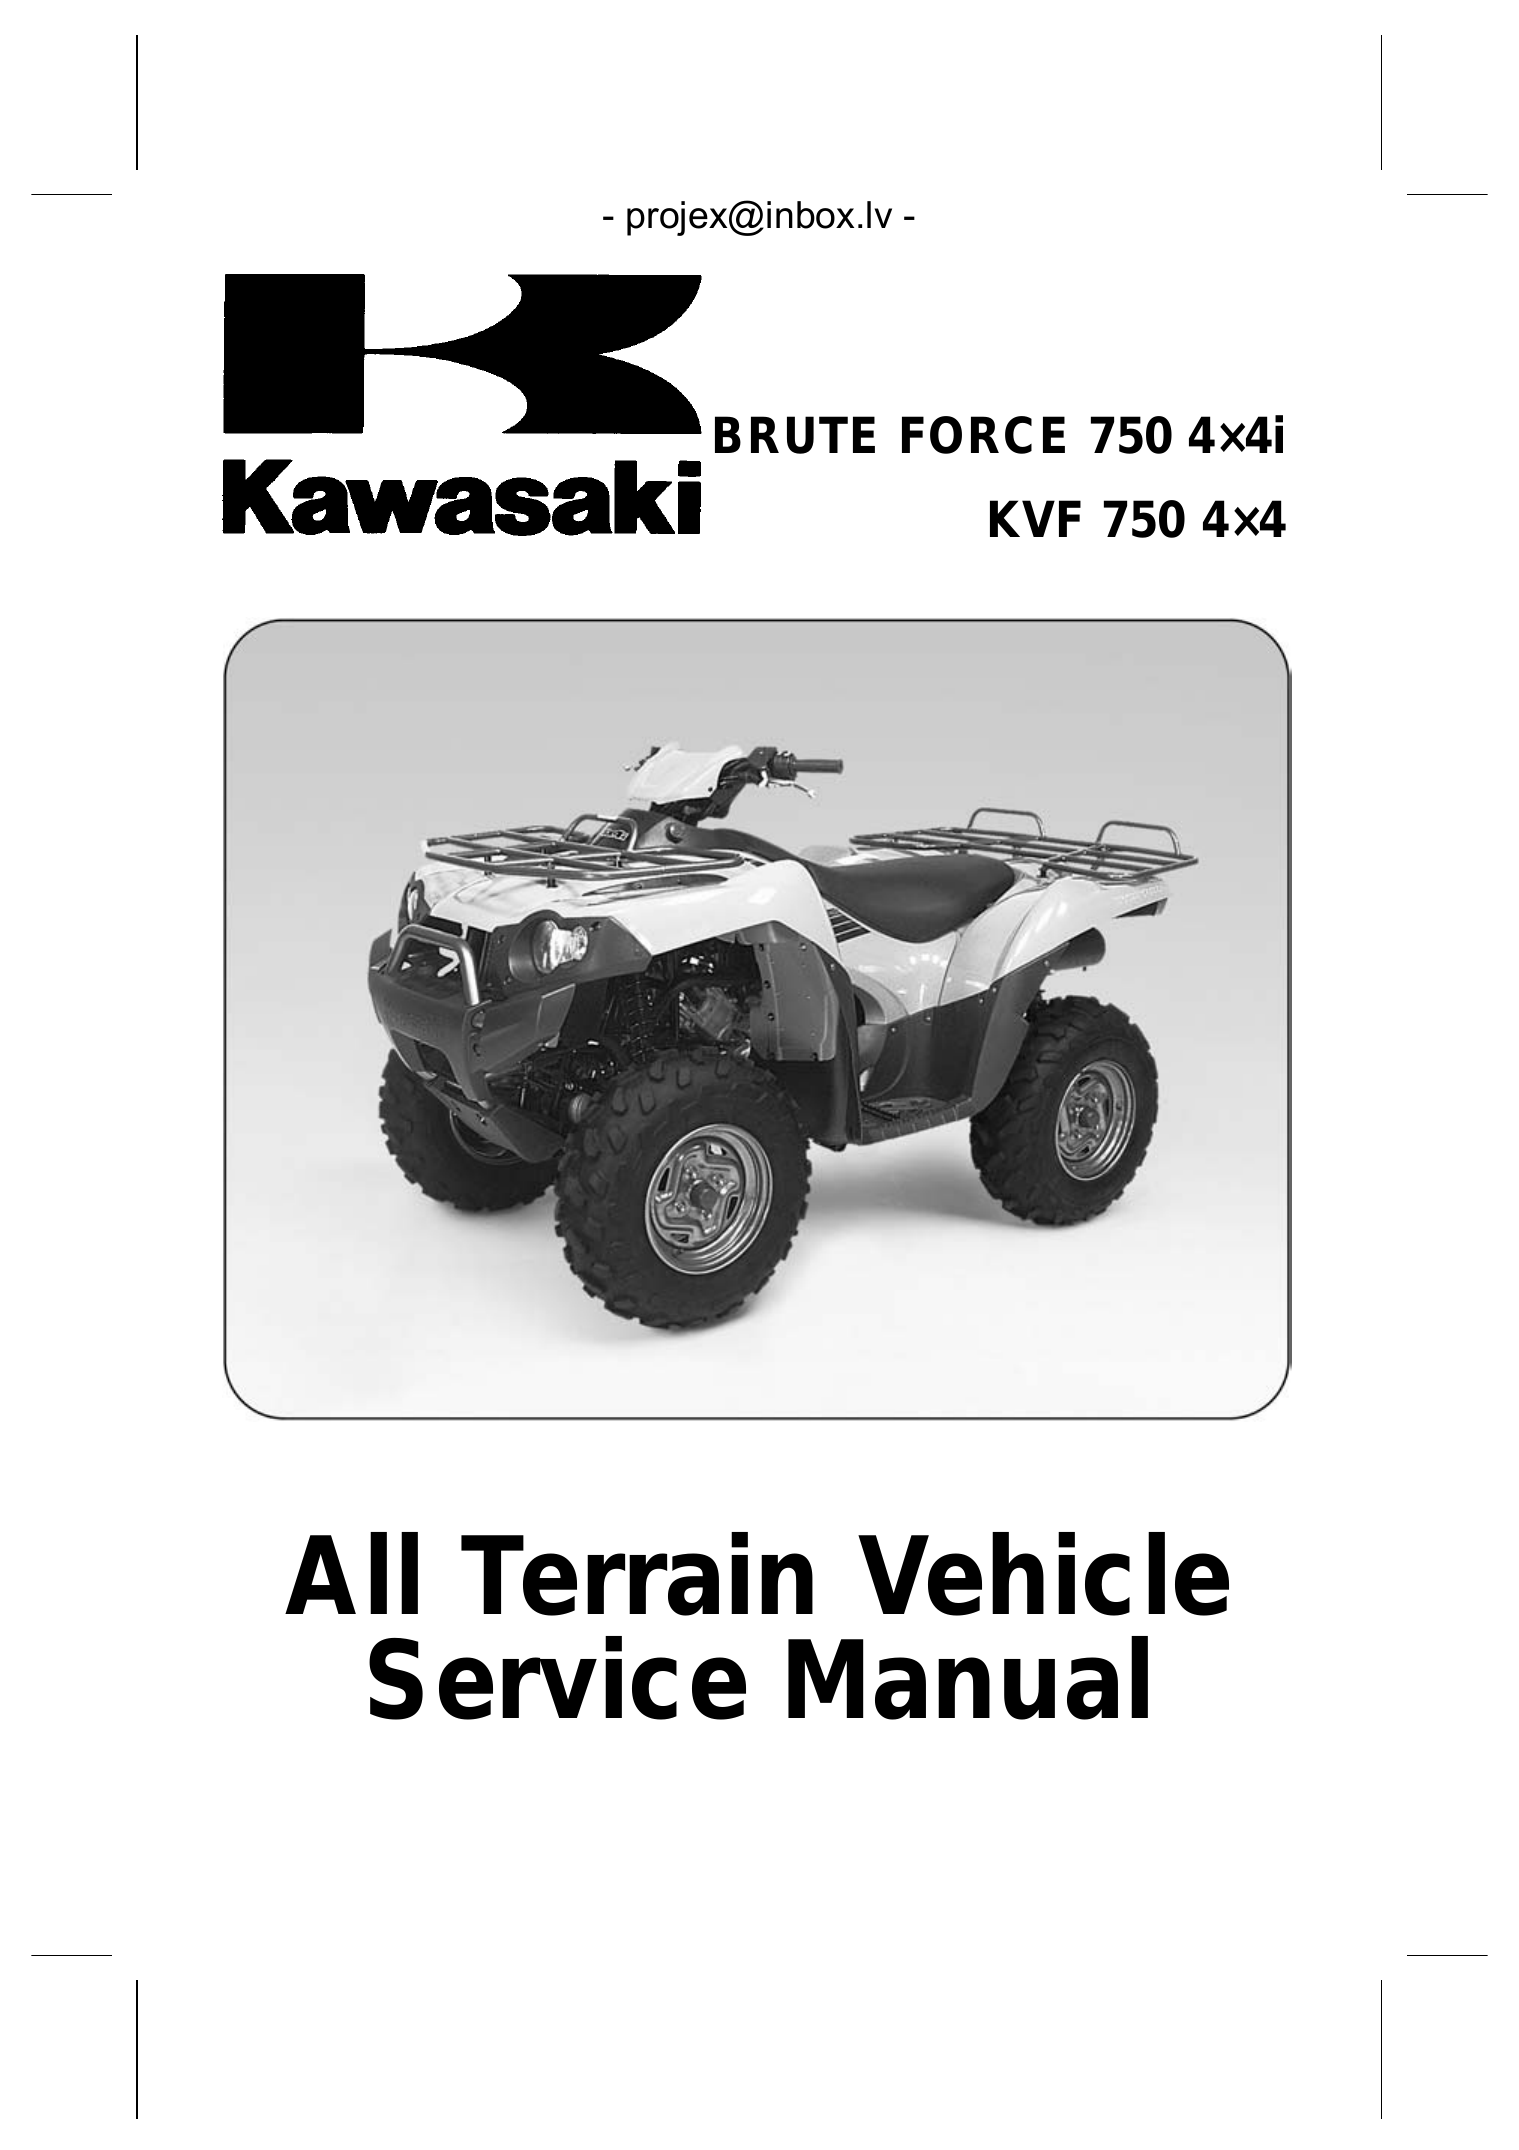 2005-2007 Kawasaki Brute Force 750, KVF750 ATV 4x4 service, repair manual Preview image 1